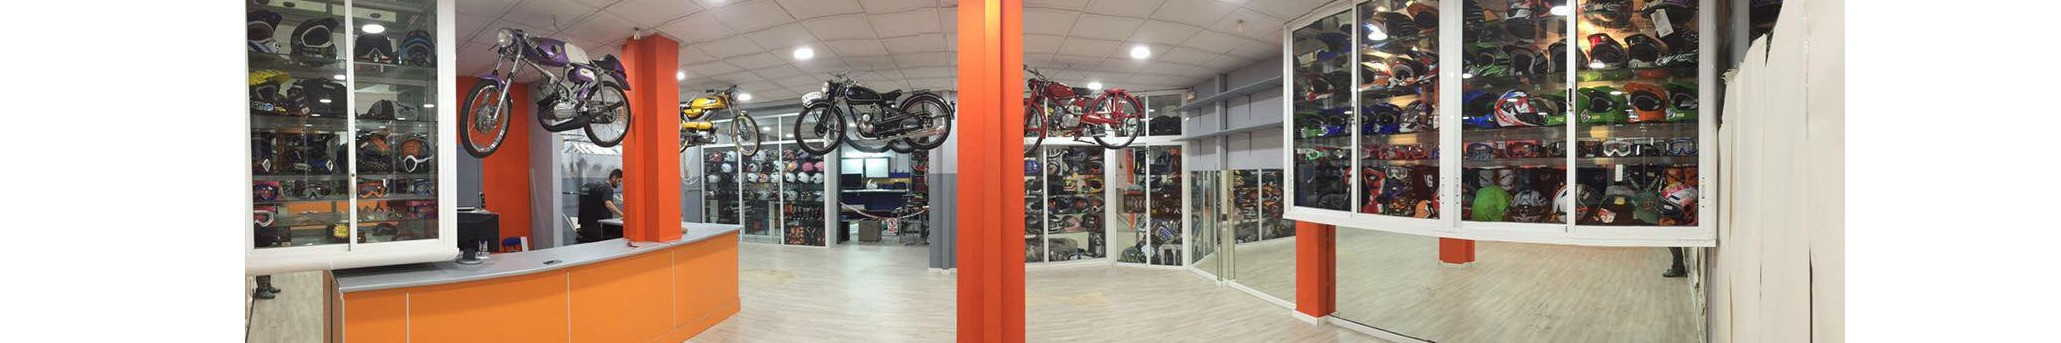 Retamotor S.L. tu taller y tienda de motos en Malaga